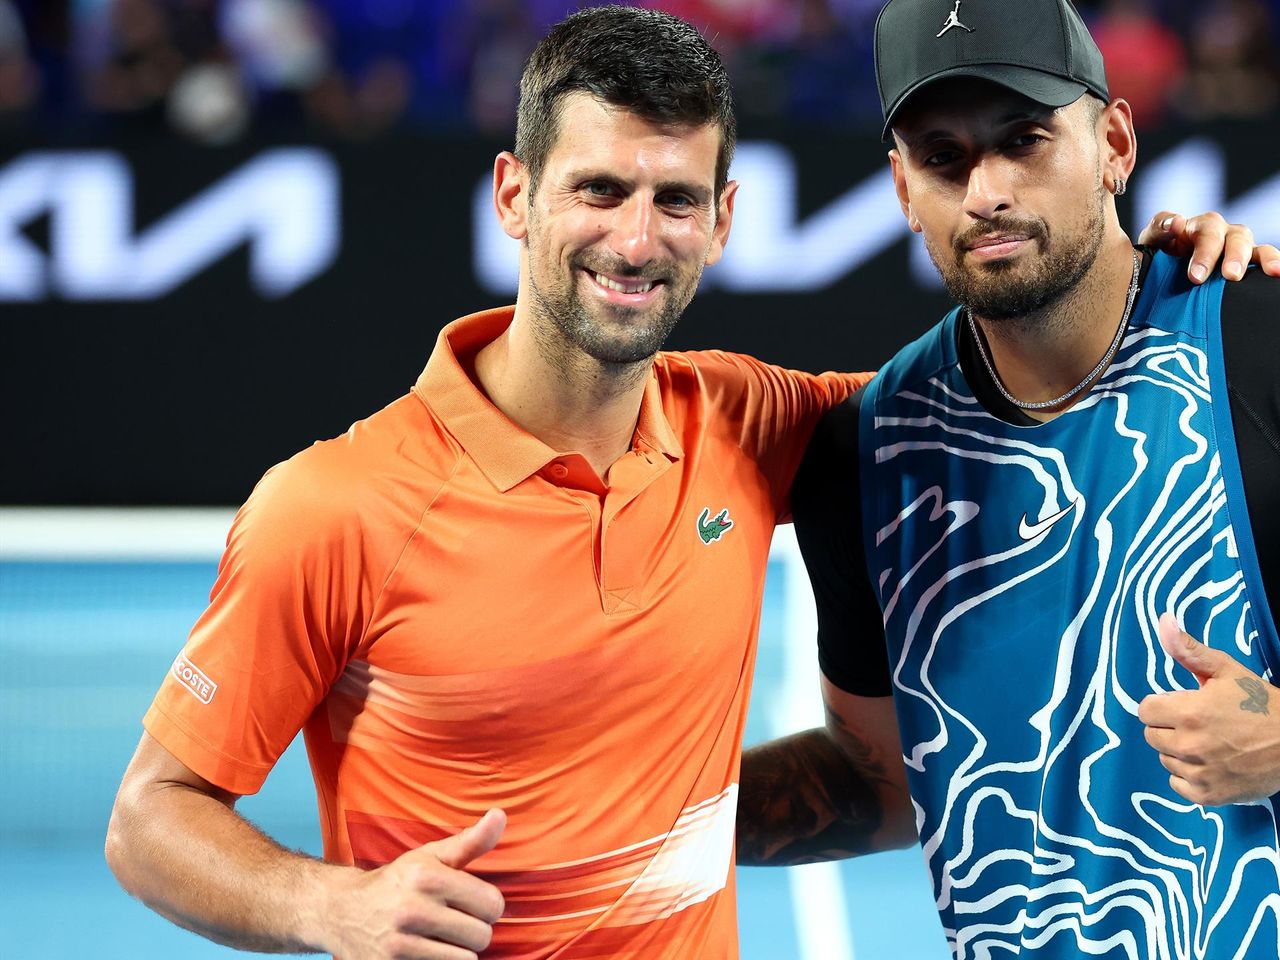 Australian Open Novak Djokovic und Nick Kyrgios unterhalten Publikum bei Charity-Match in Melbourne - Tennis Video